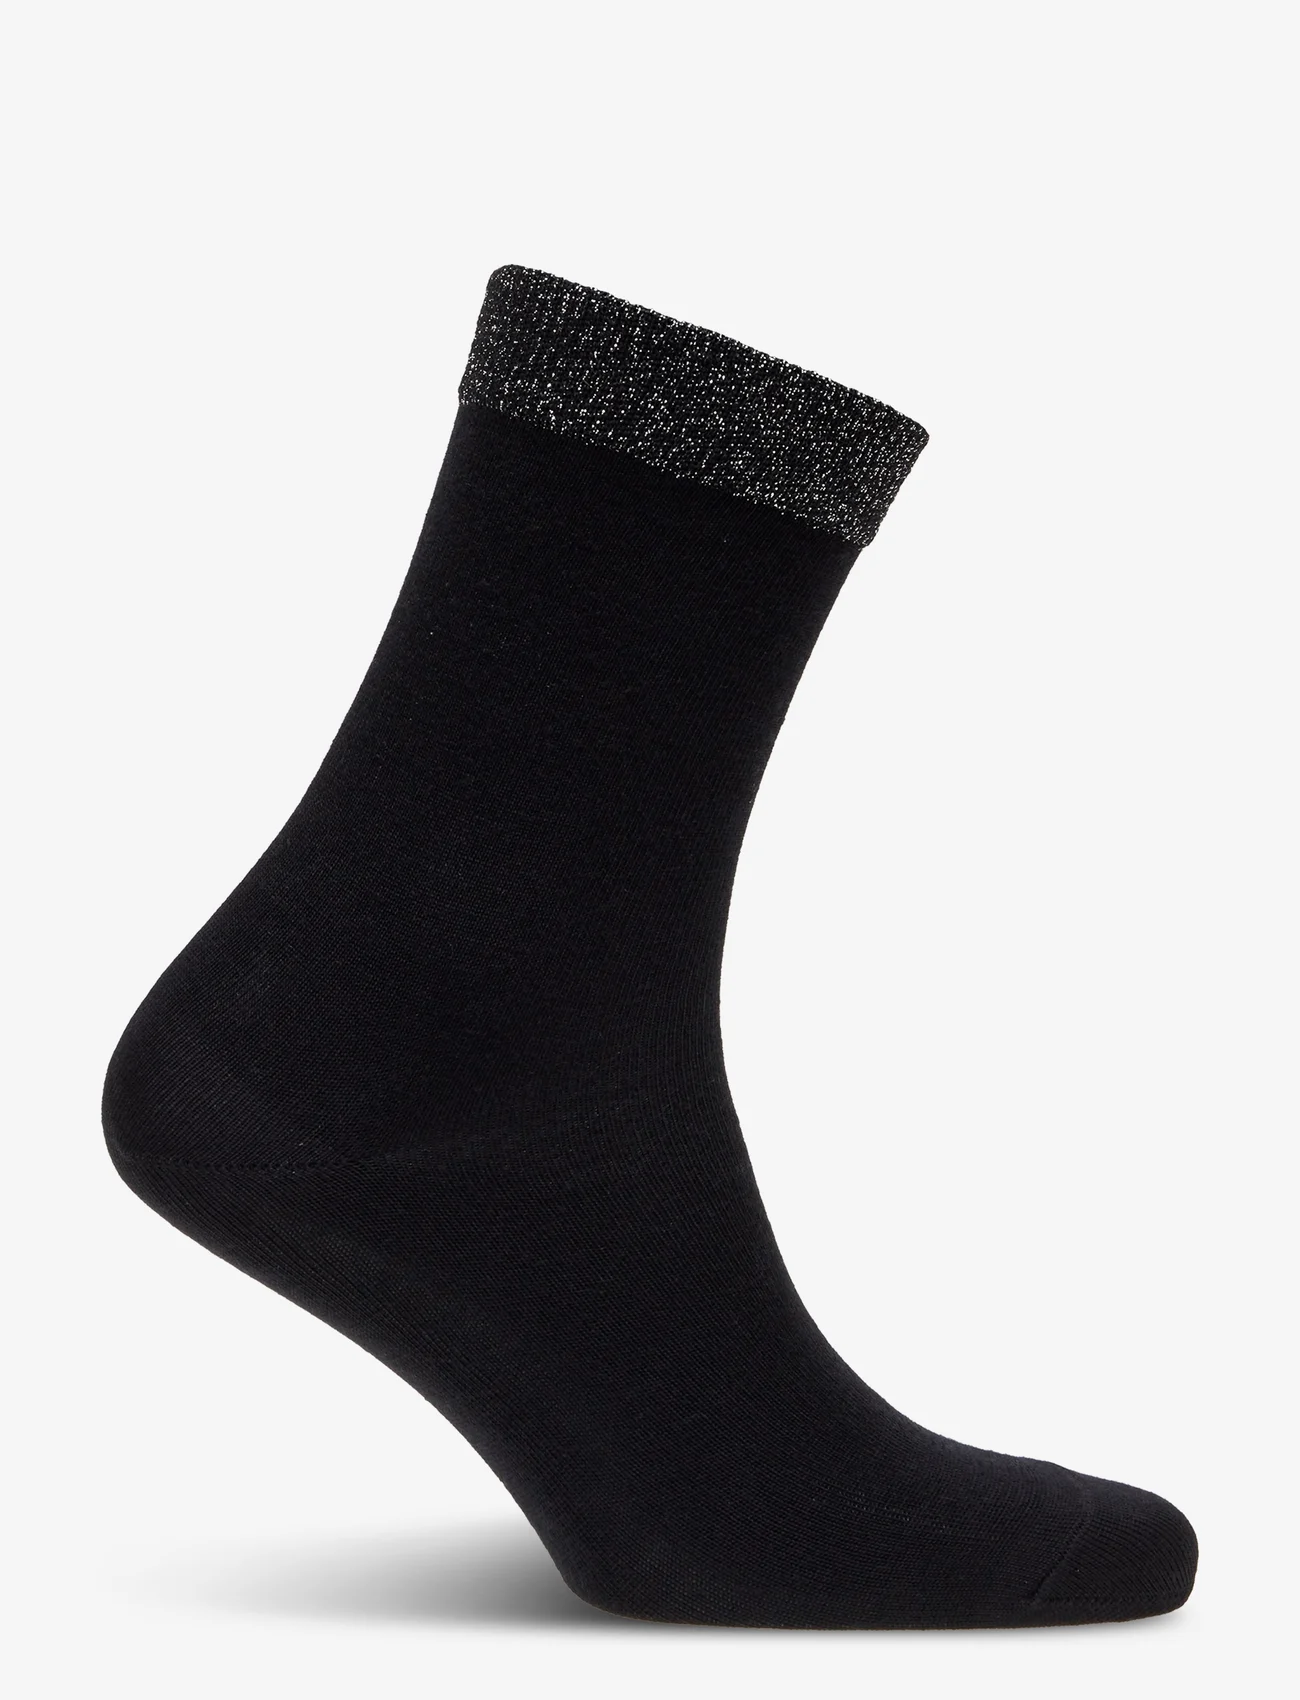 mp Denmark - Wool/silk socks - laveste priser - black - 1